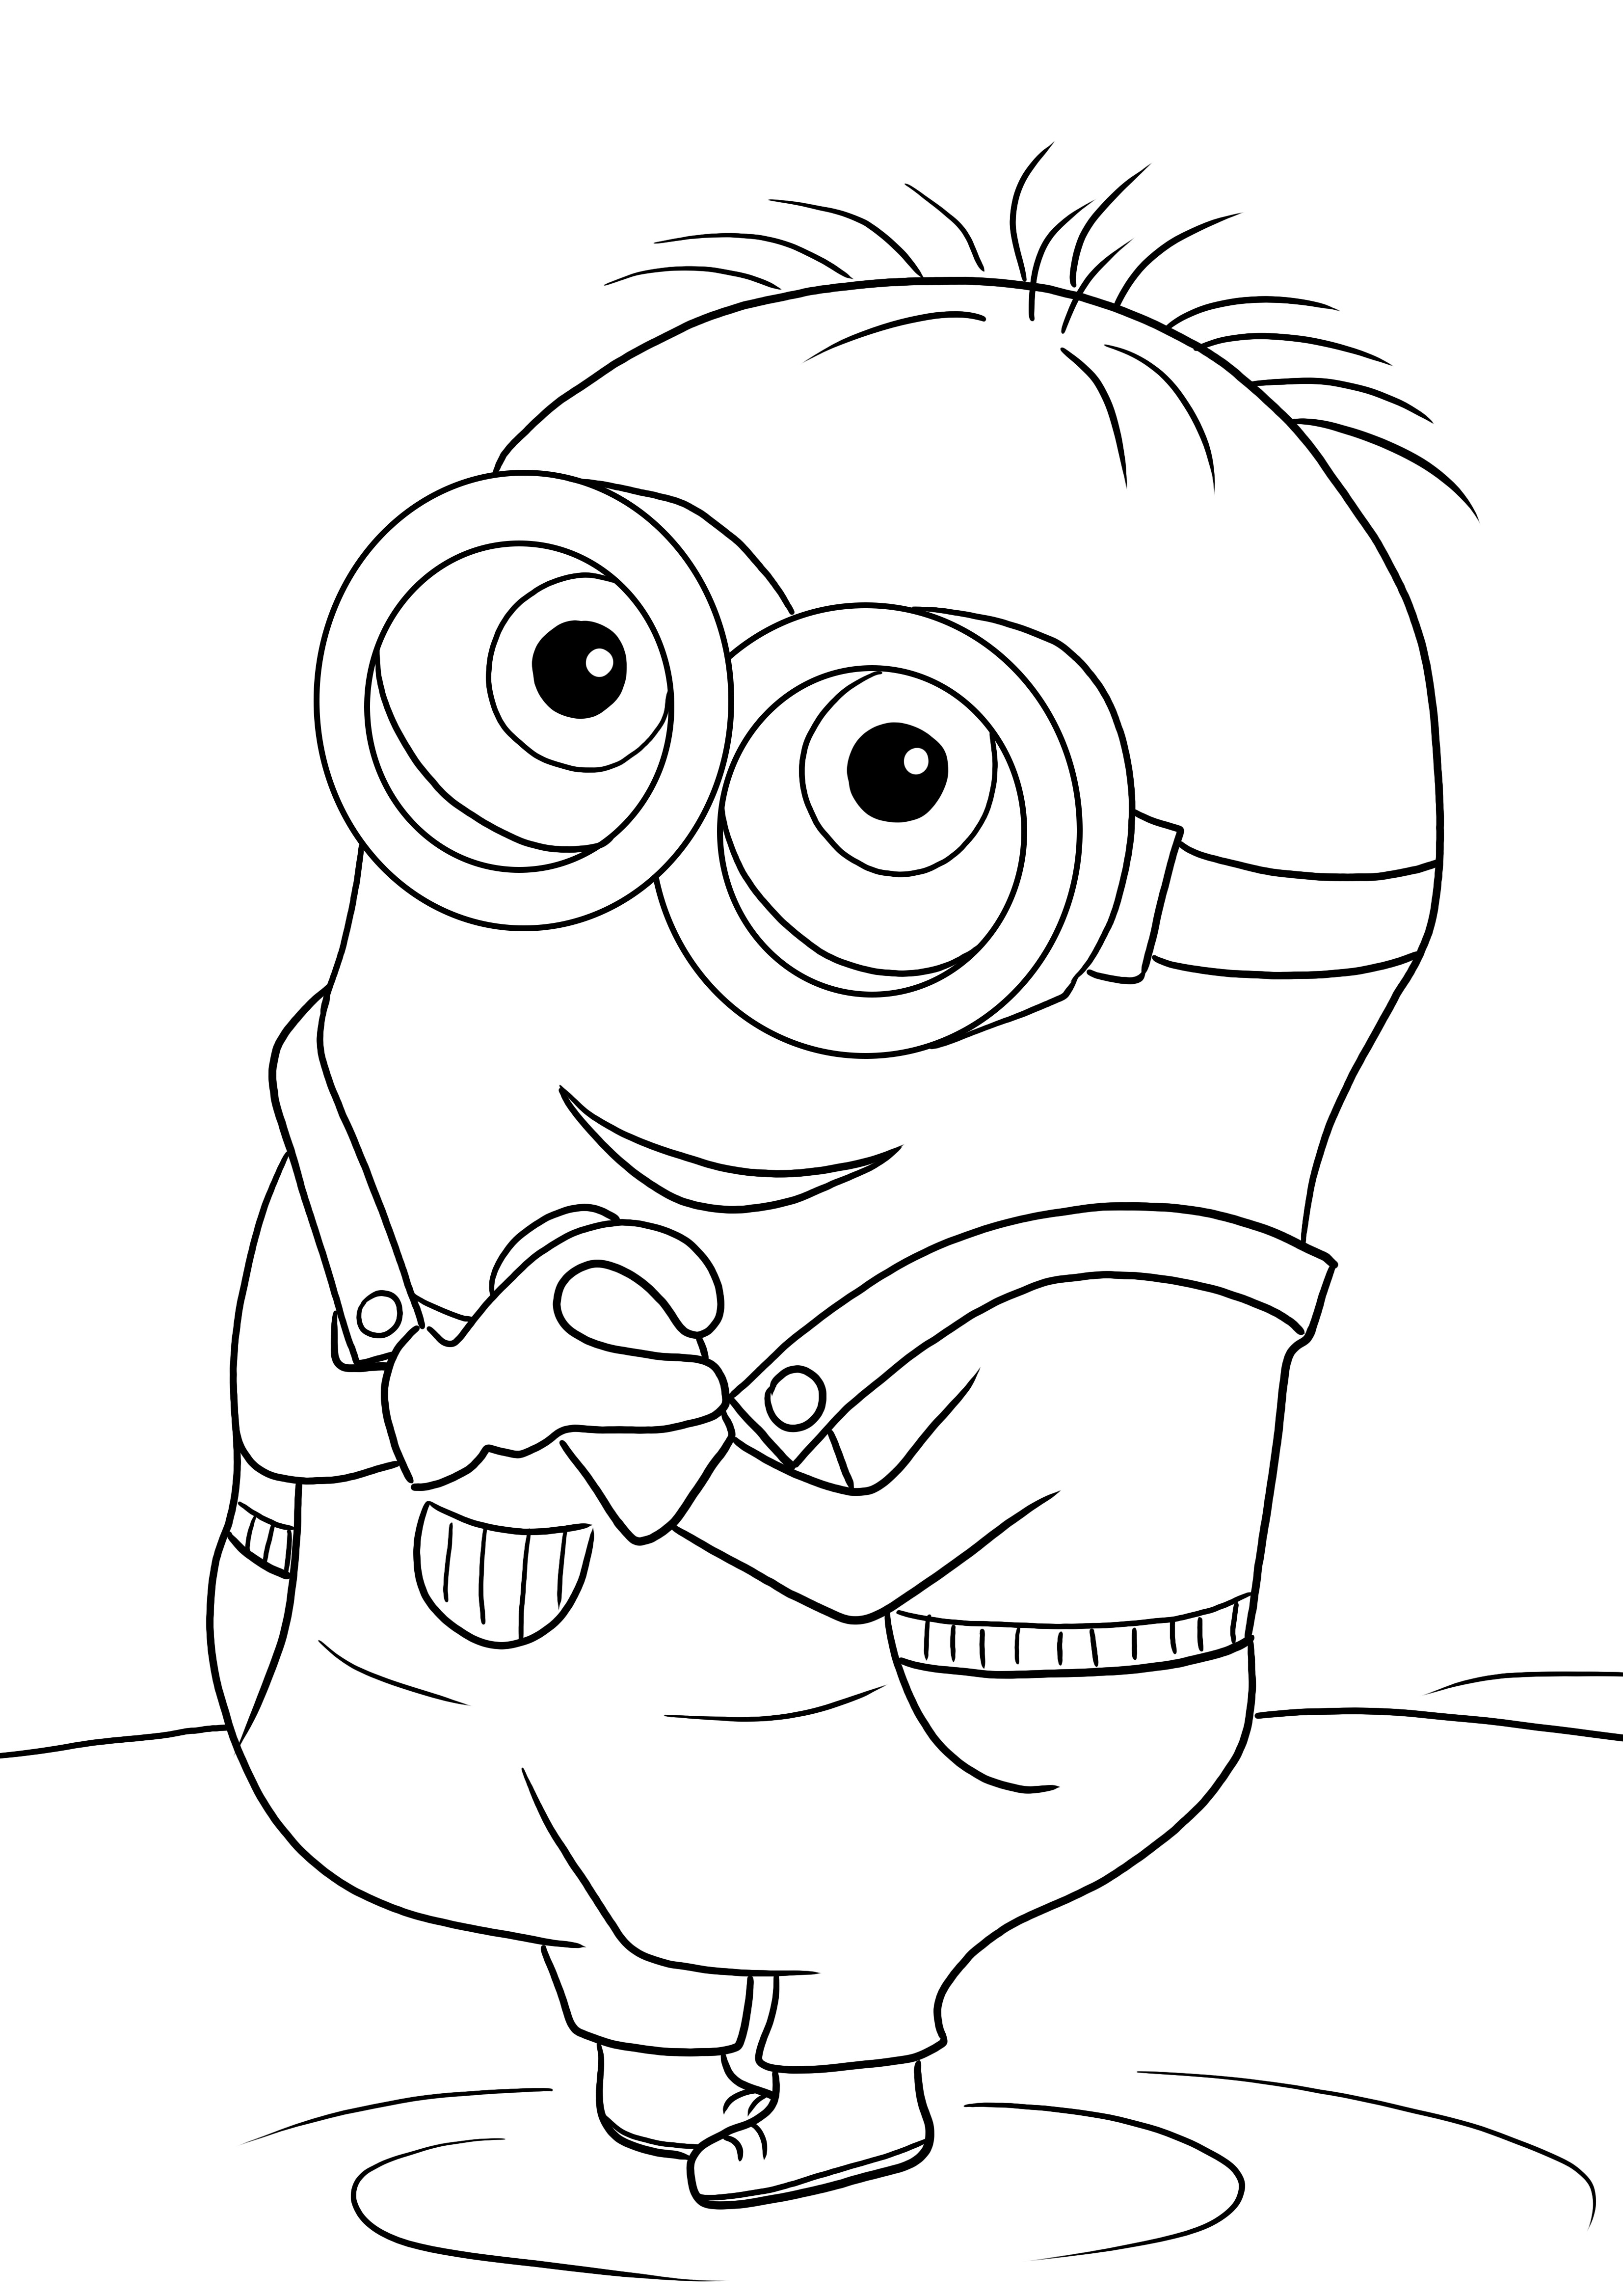 İşte sevimli Minion Bob resminin indirilmesi veya yazdırılması ücretsiz bir ücretsiz boyaması